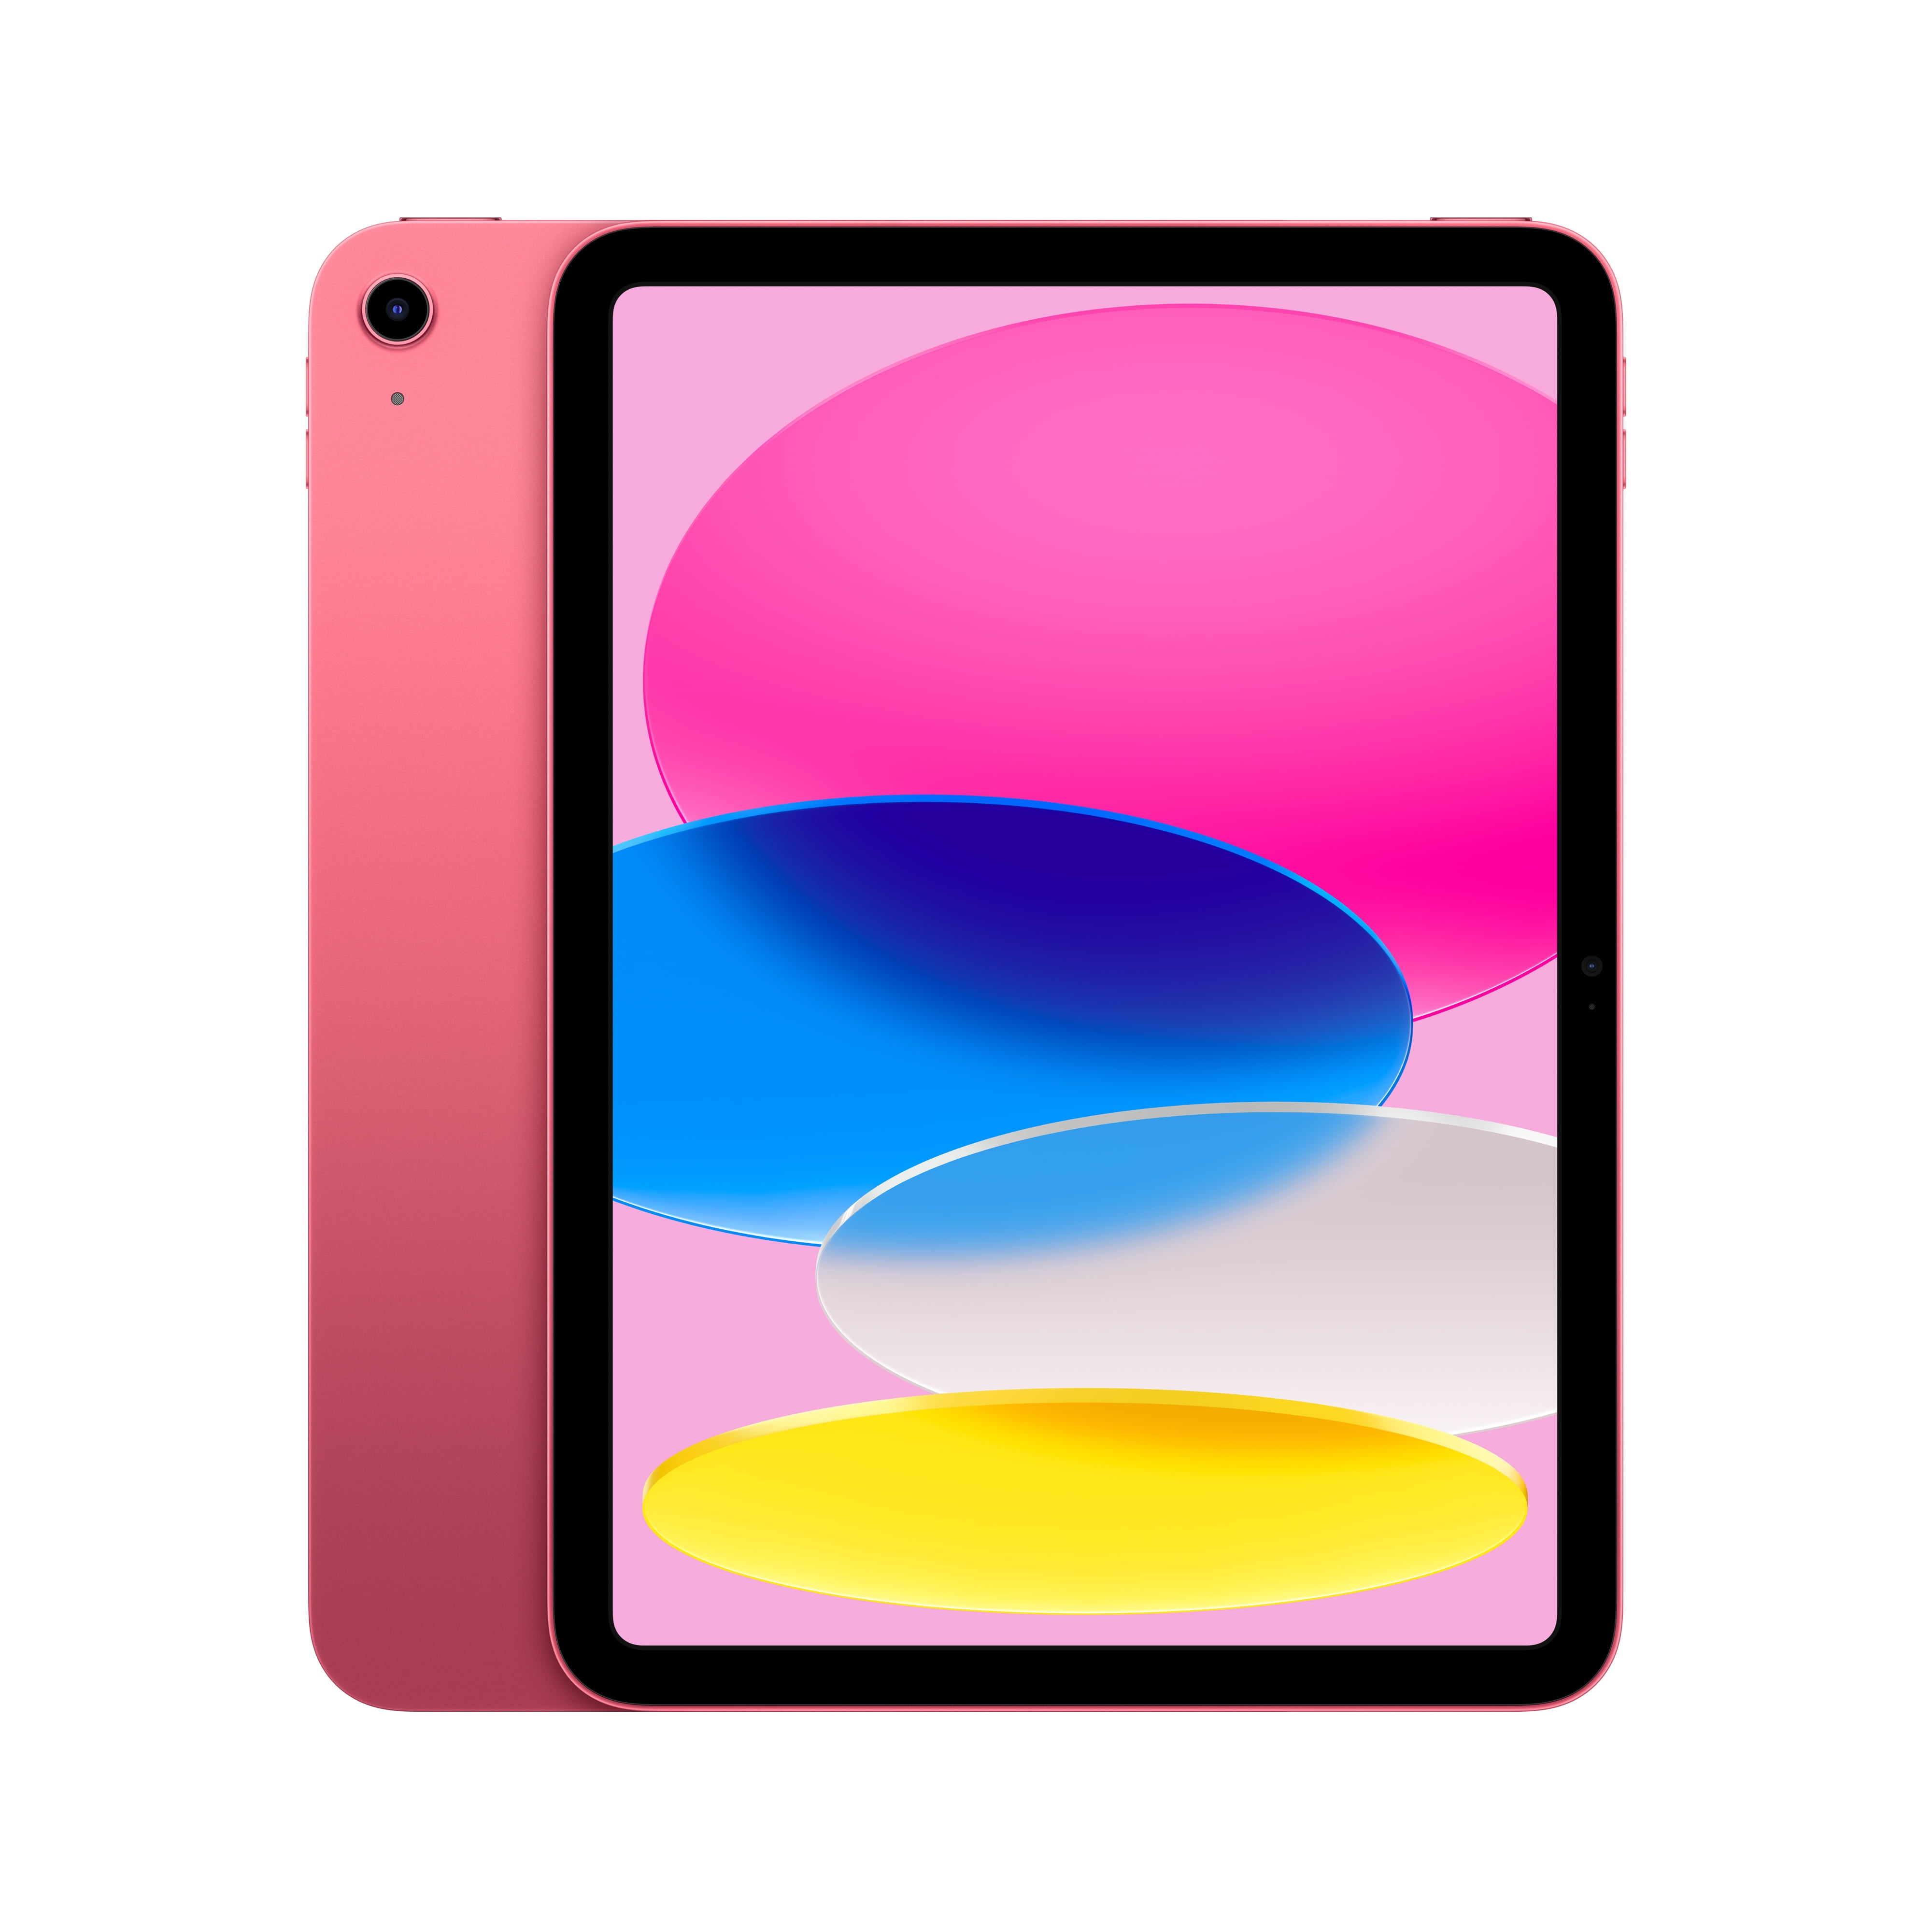 Apple iPad Air MPQC3LL/A .9" Tablet GB WiFi, Pink   Walmart.com